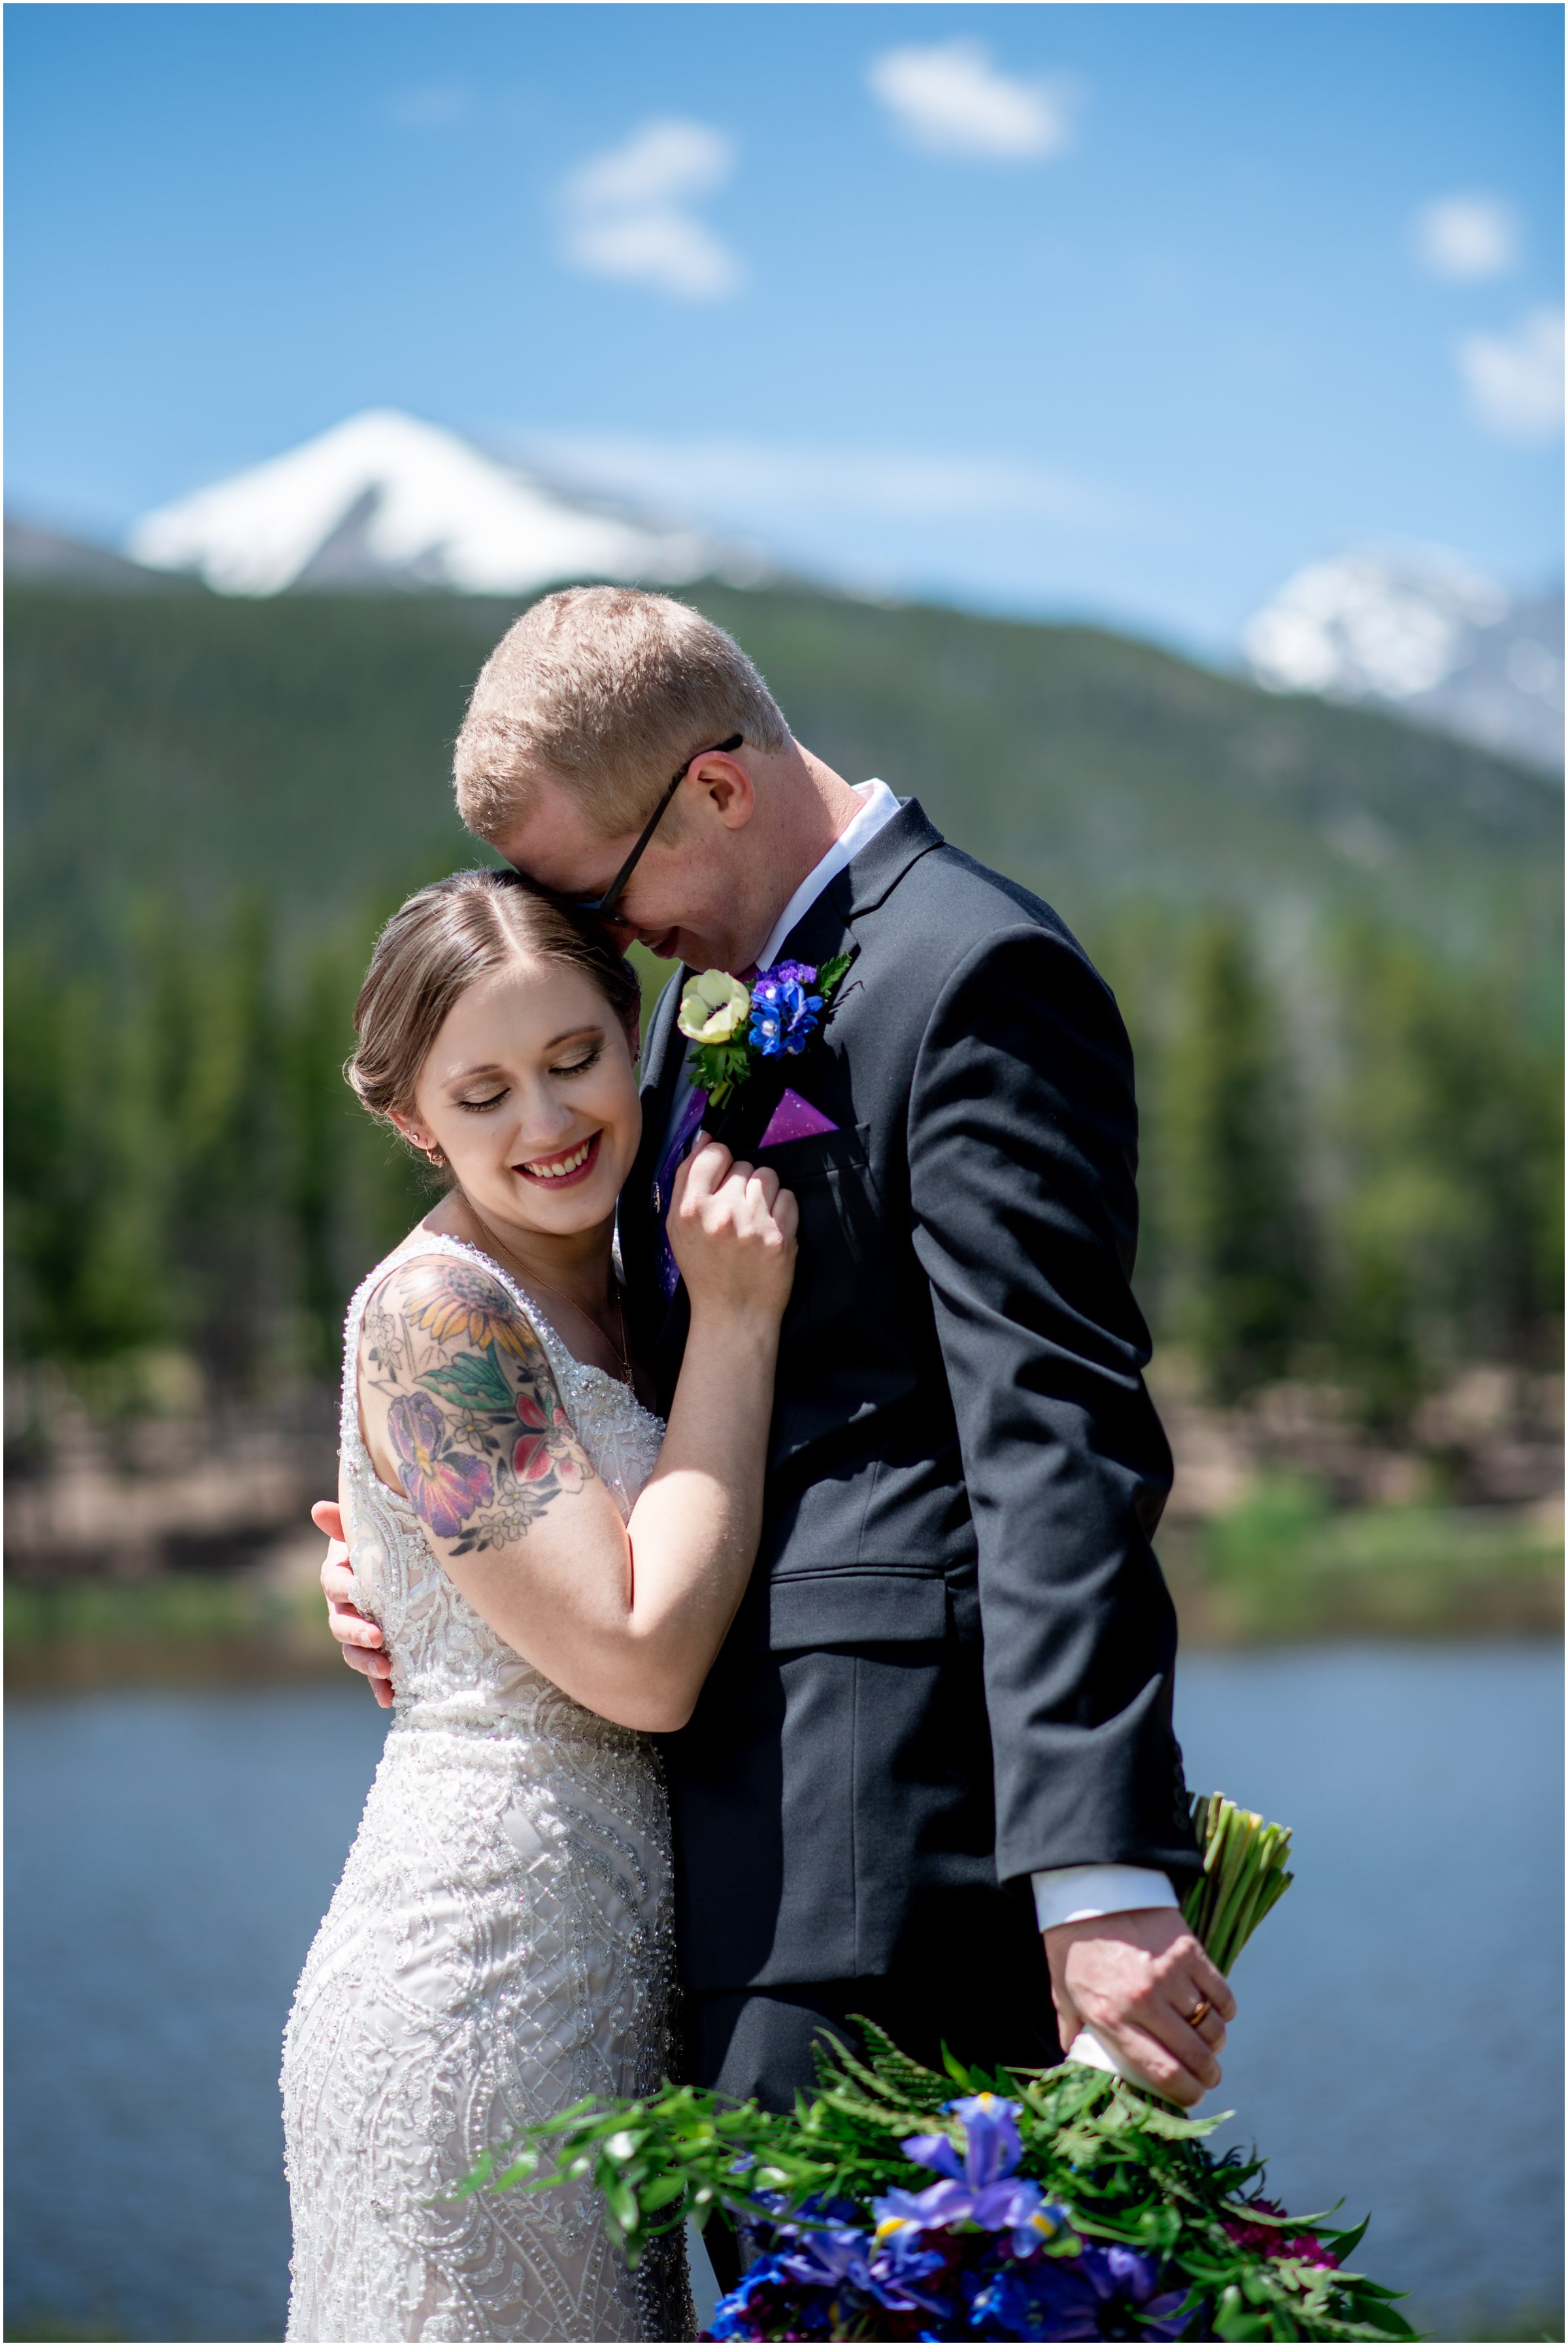 RMNP wedding near Estes Park Colorado